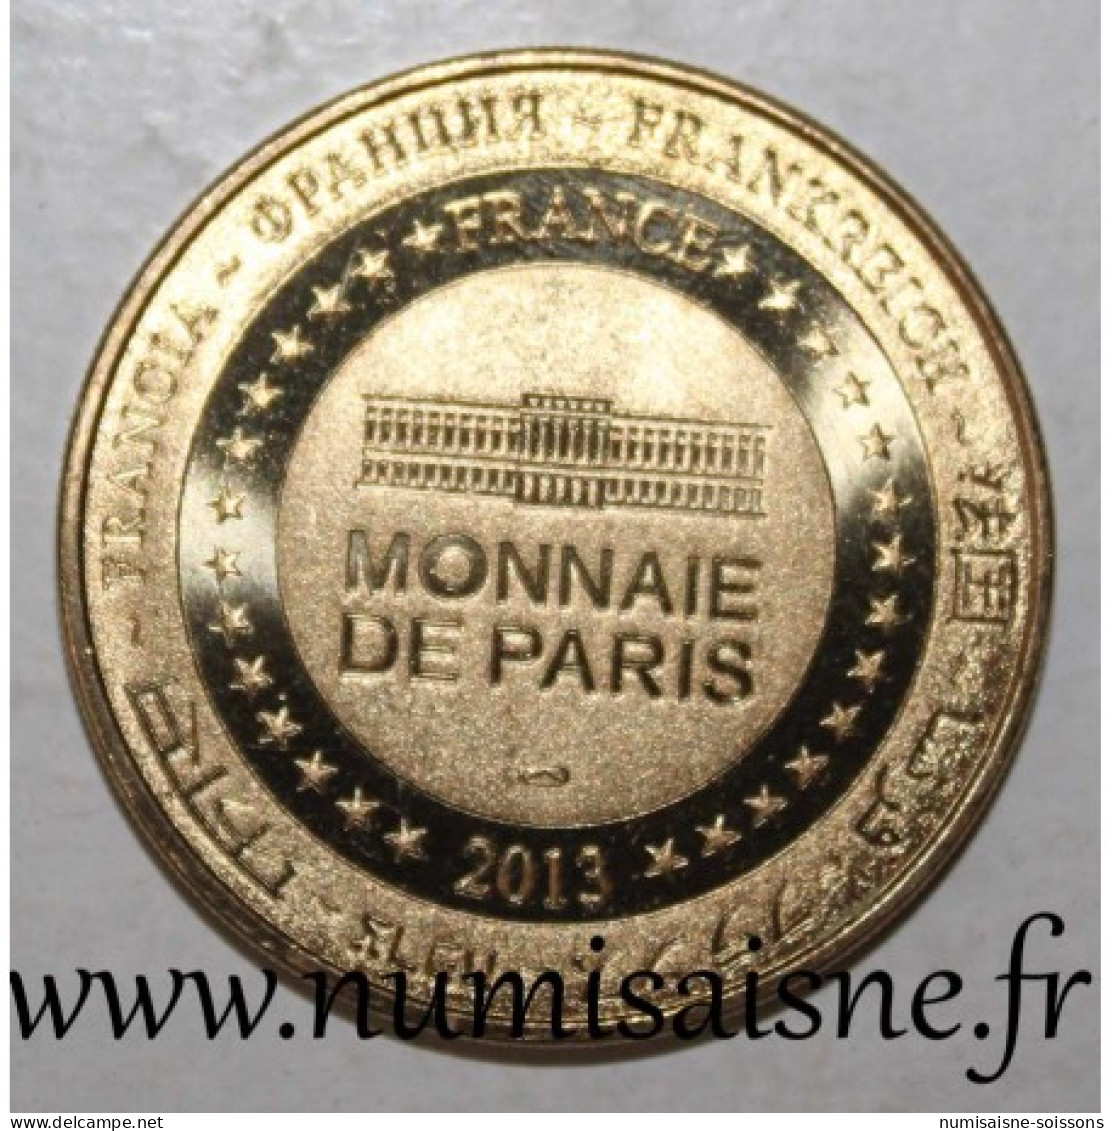 75 - PARIS - MUSÉE DU LOUVRE - LA JOCONDE - Monnaie De Paris - 2013 - 2013